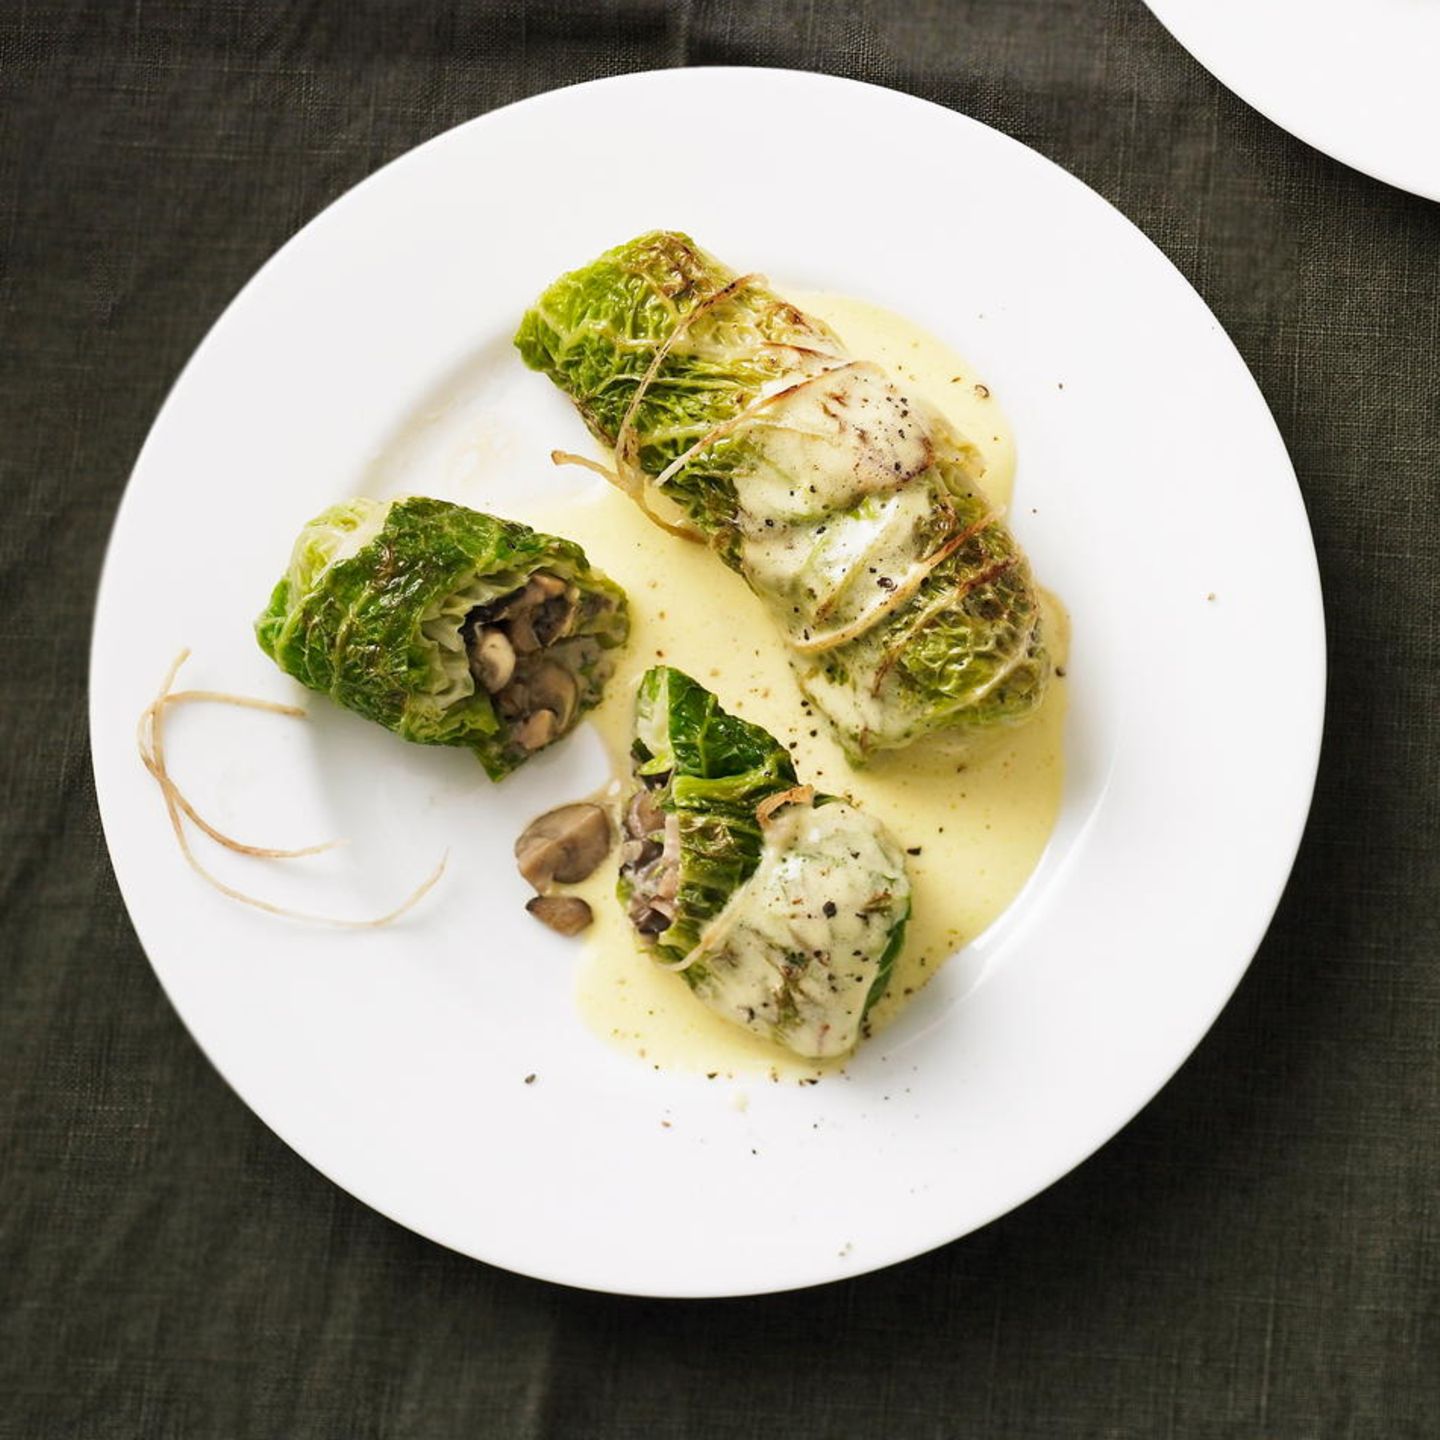 Savoy cabbage recipes: savoy cabbage rolls